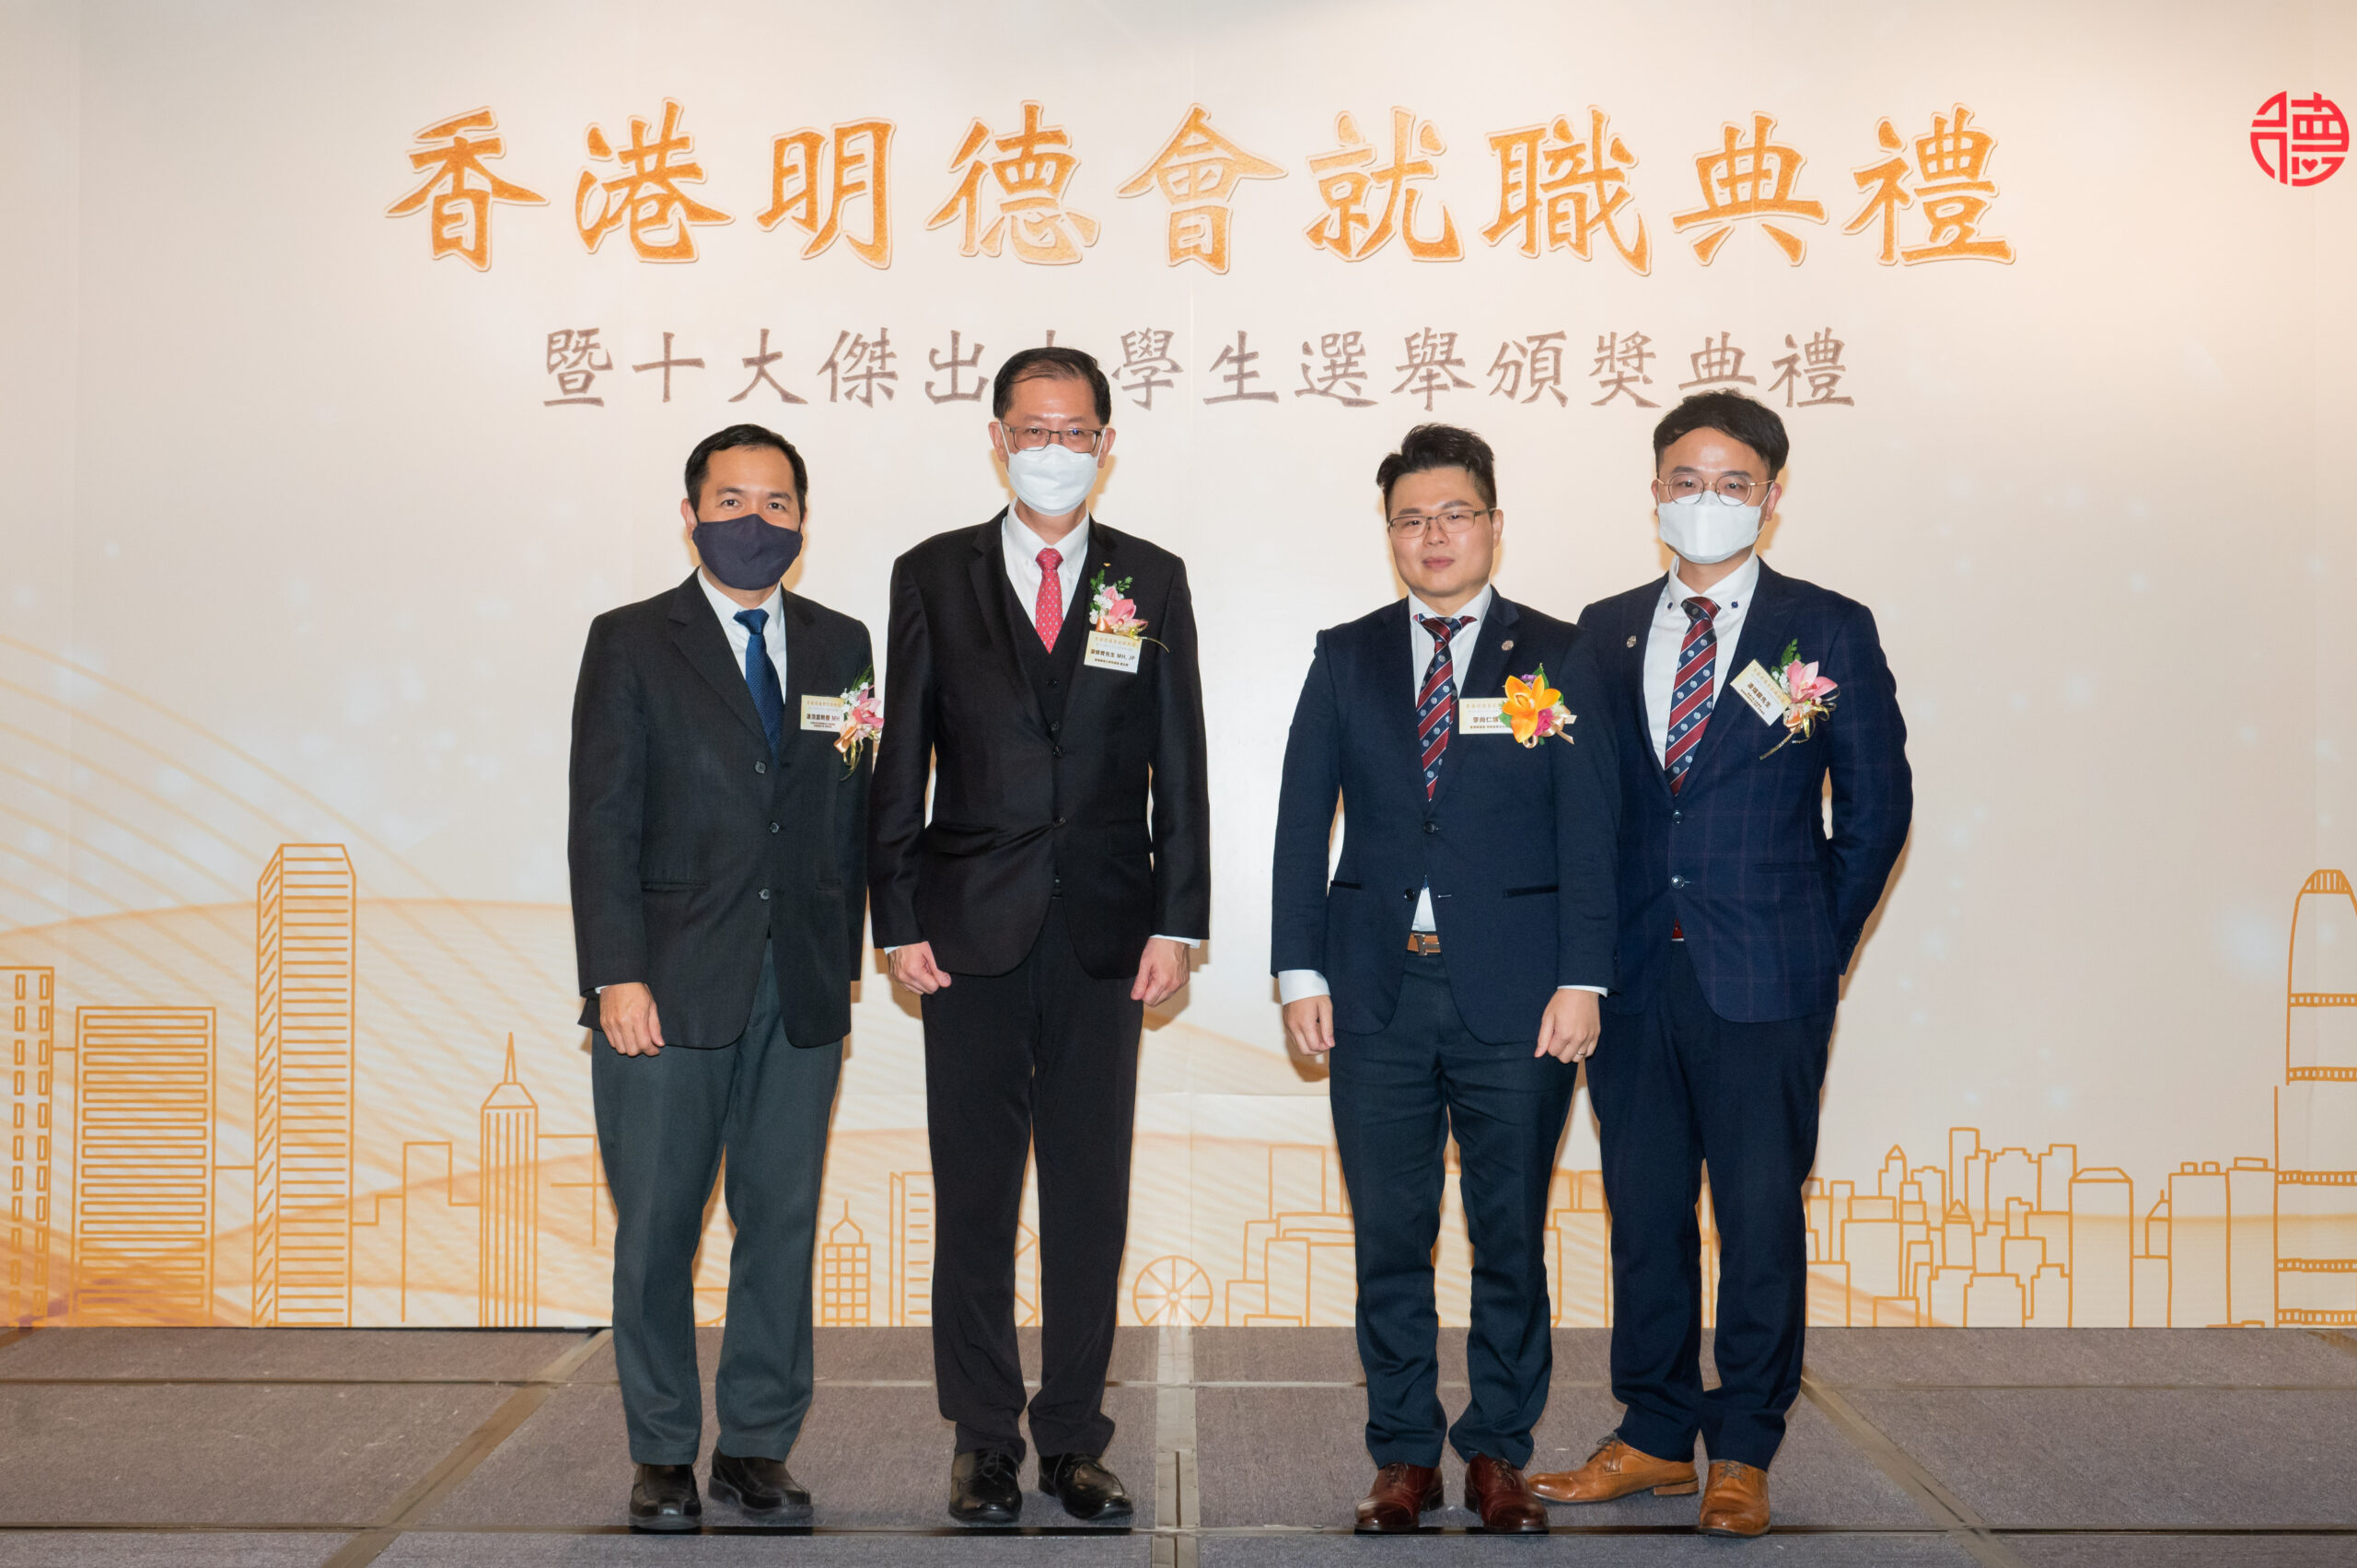 頒獎嘉賓 左至右: 凌浩雲, 湯修齊, 李尚仁, 凌煒鏗